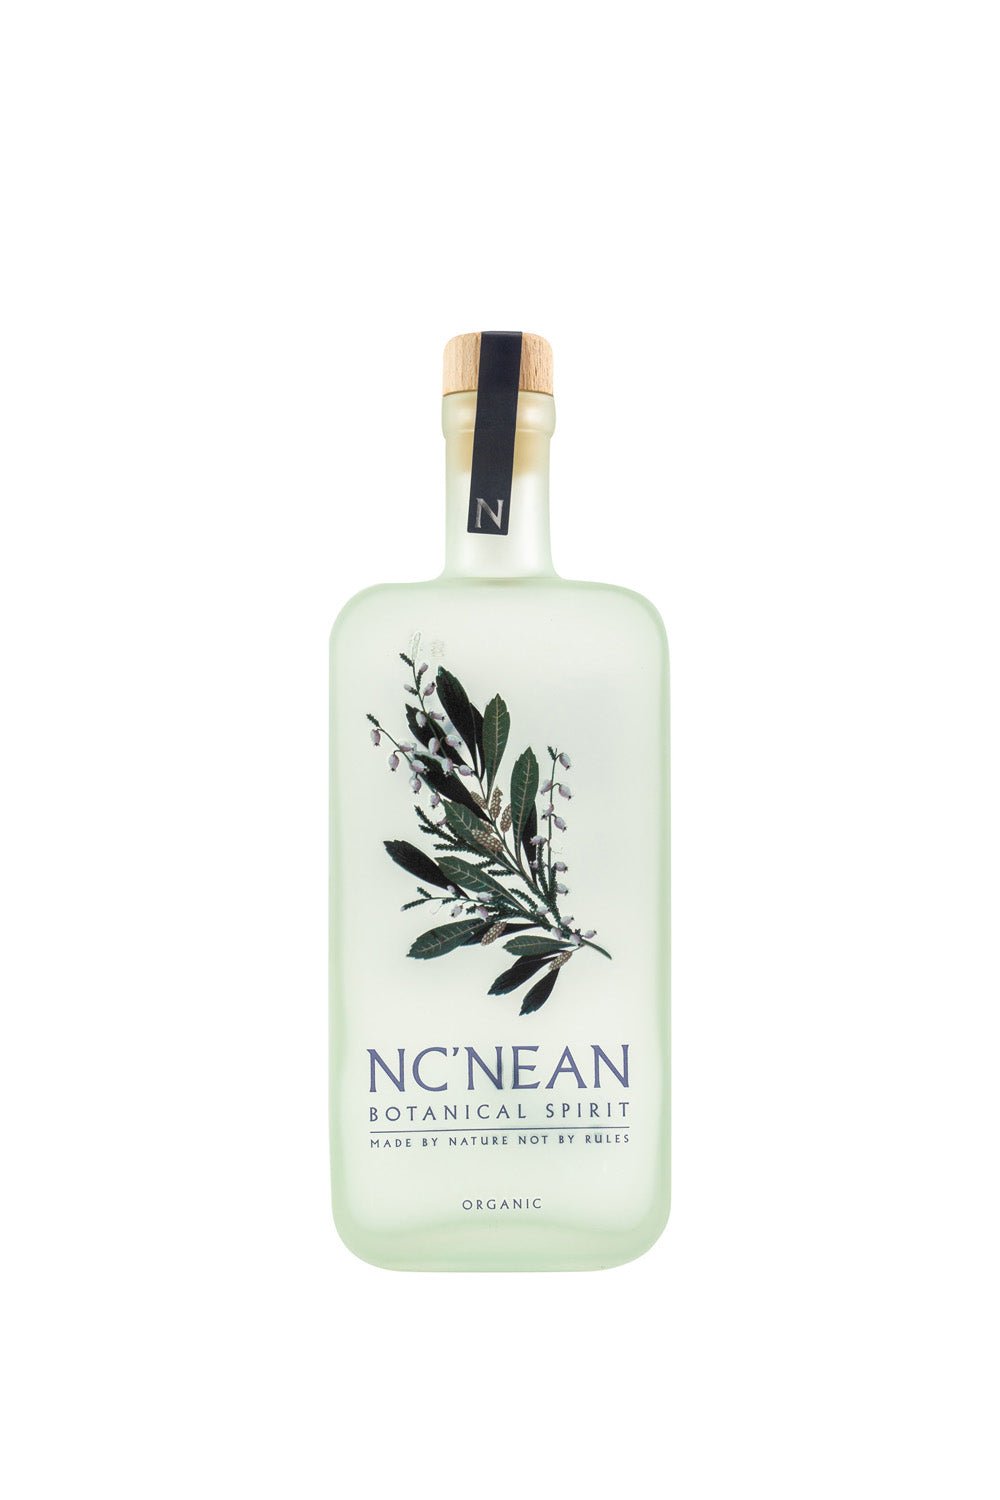 Nc'Nean Botanical Spirit Organic 40% vol. 500ml - Maltimore